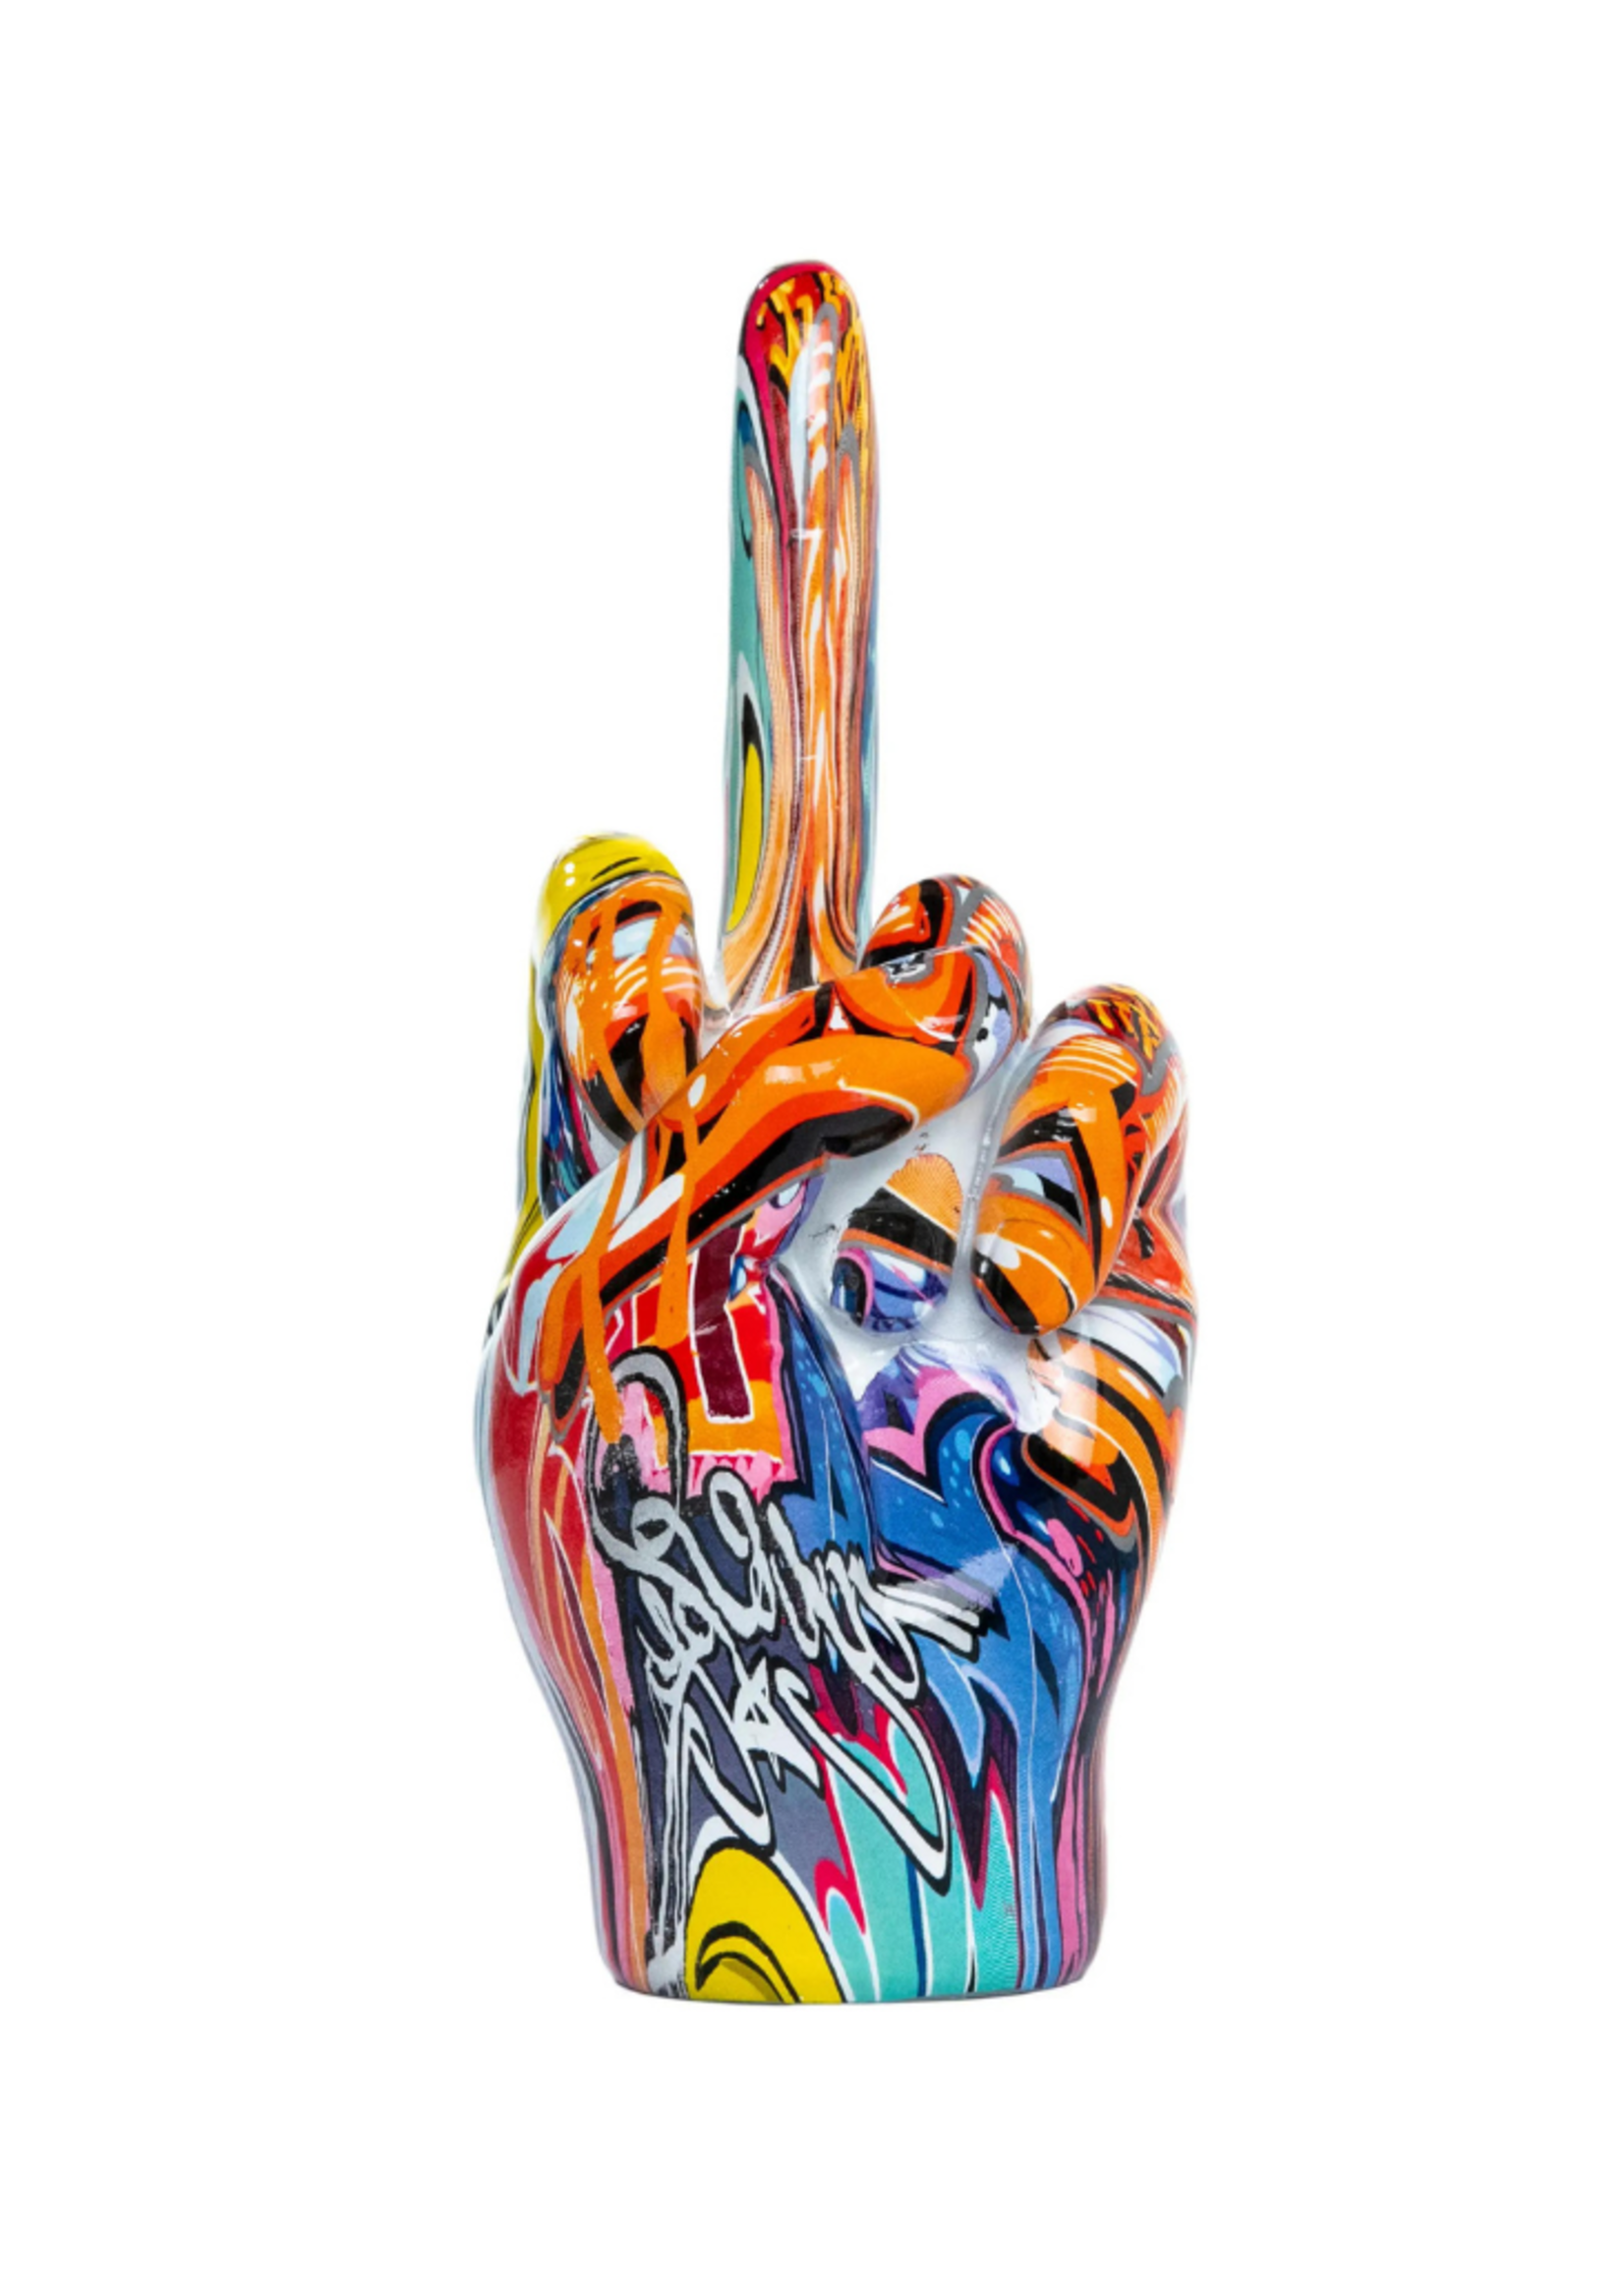 Middle Finger Hand // Street Art